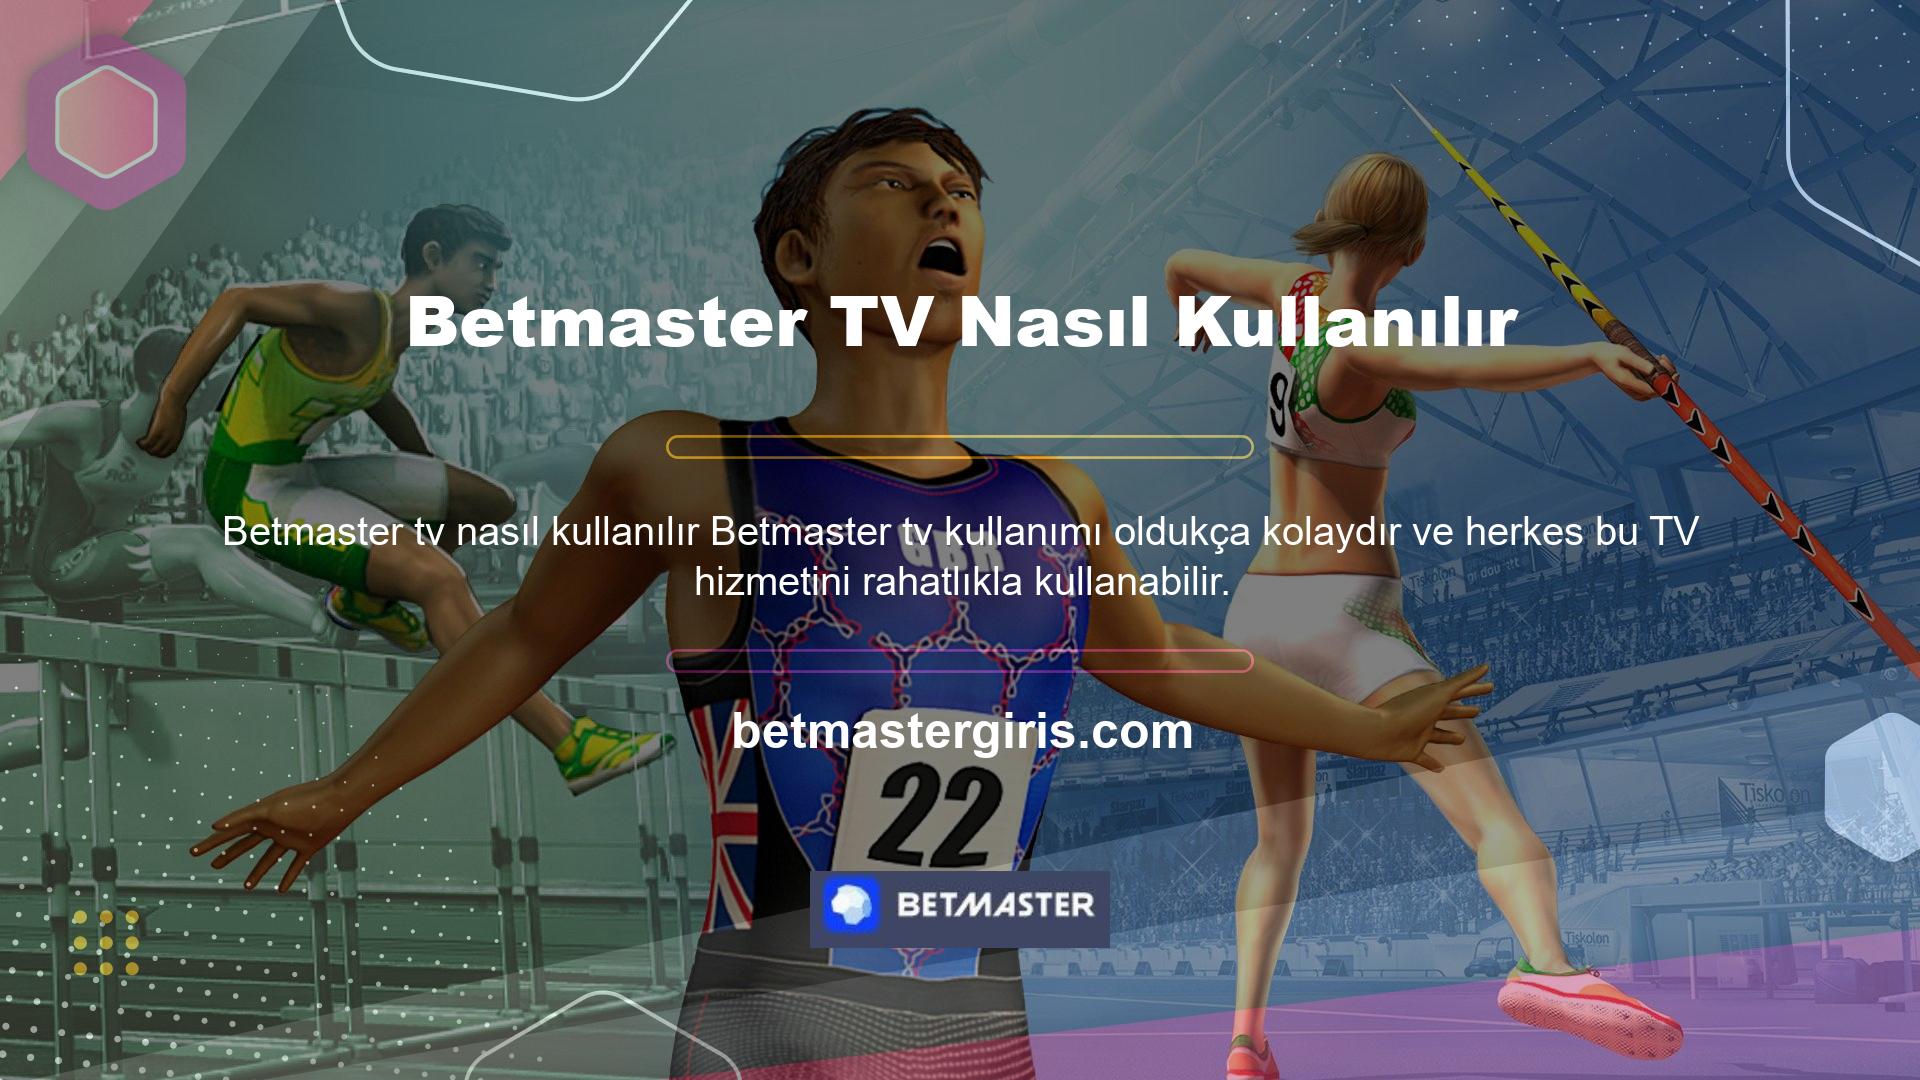 Betmaster TV nasıl kullanılır TV'nizde canlı maç izlemek için yapmanız gerekenler: Betmaster TV'ye giriş yapmak için öncelikle Betmaster web sitesinin ana sayfasına giriş yapmalısınız